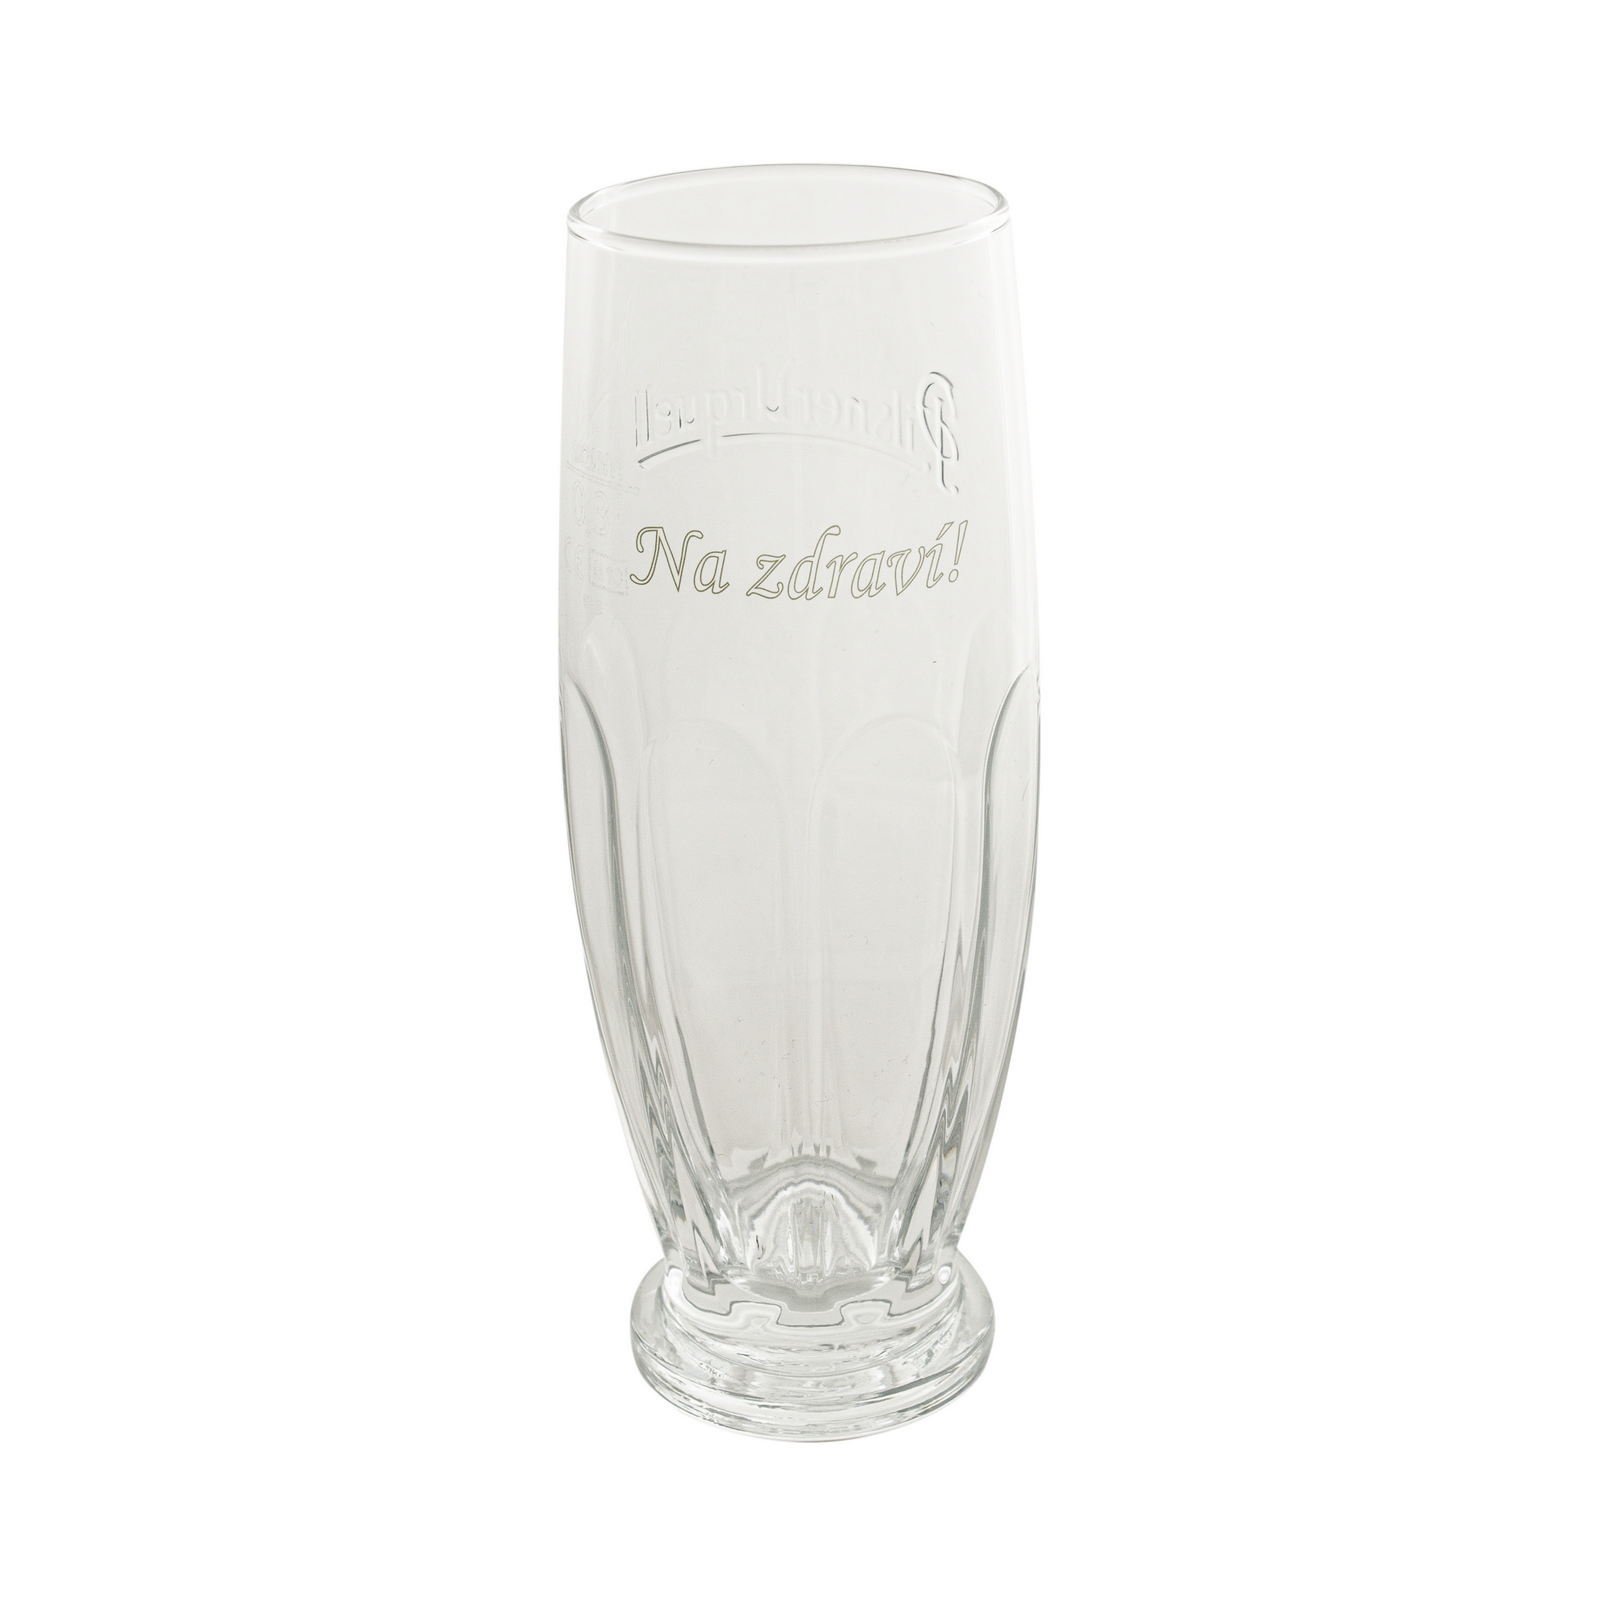 Pilsner Urquell Original 0.3 l glass with inscription